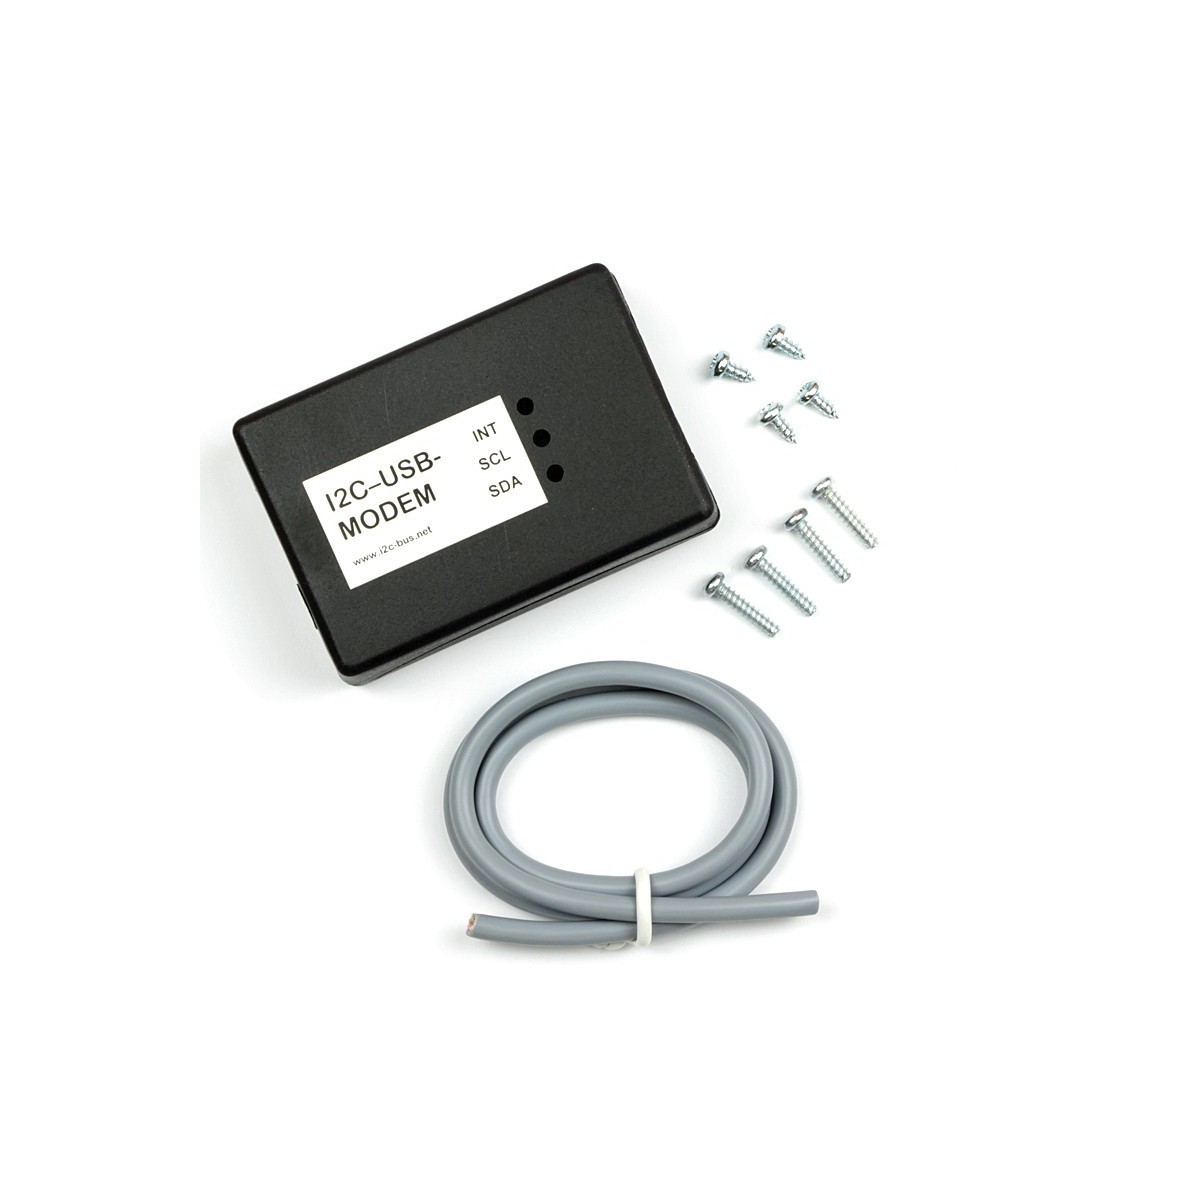 Gehäuse für I2C-USB-Modem